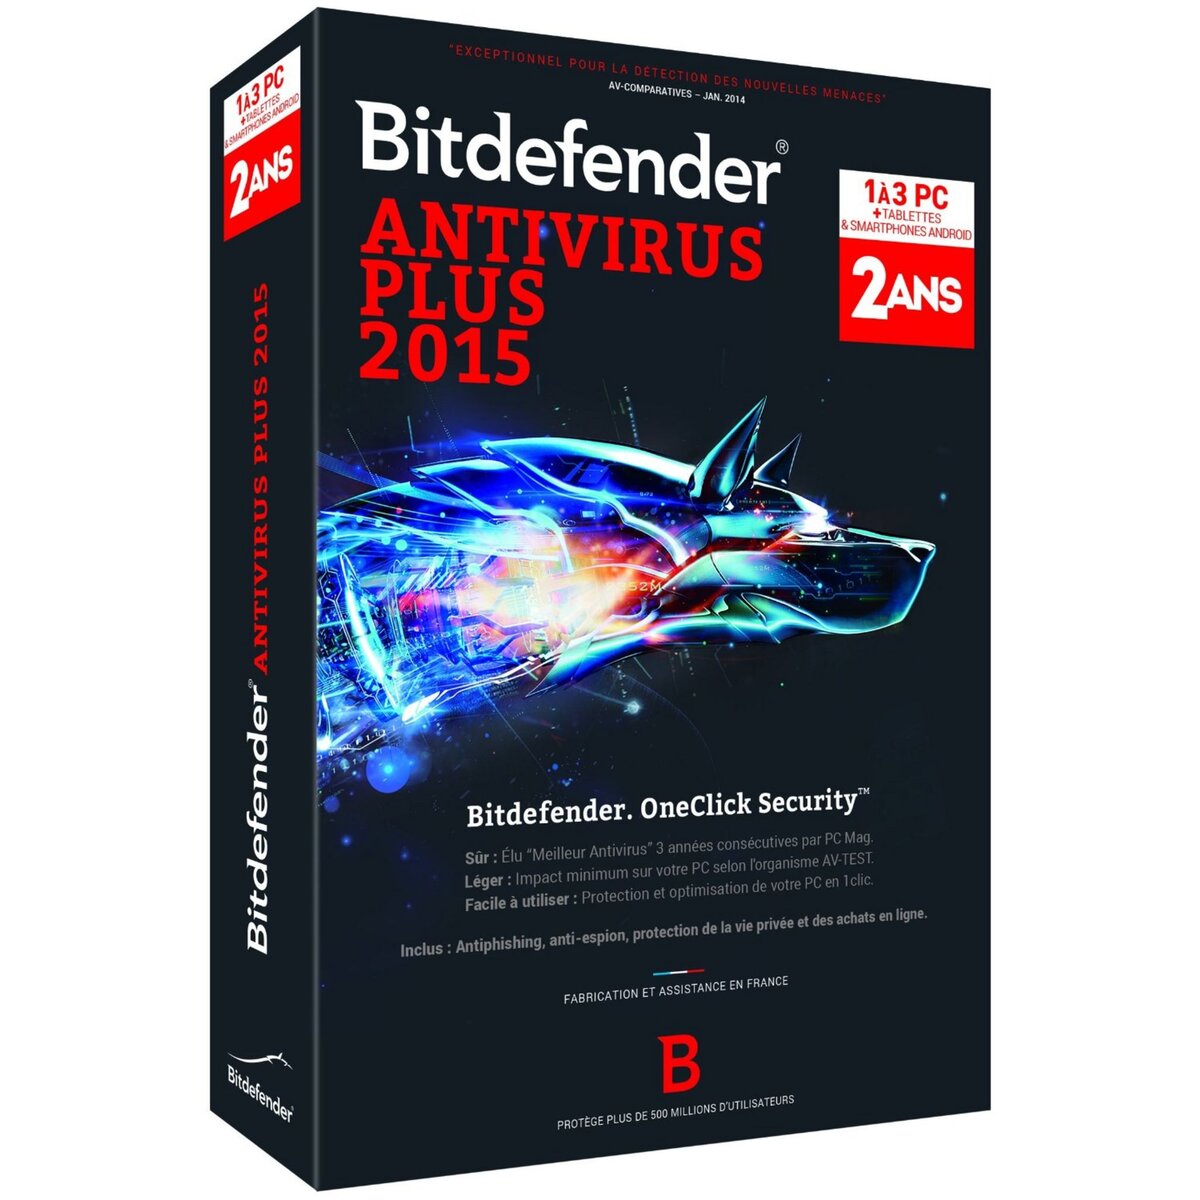 Bitdefender Antivirus Plus 2015 - 2 Ans/3 PC